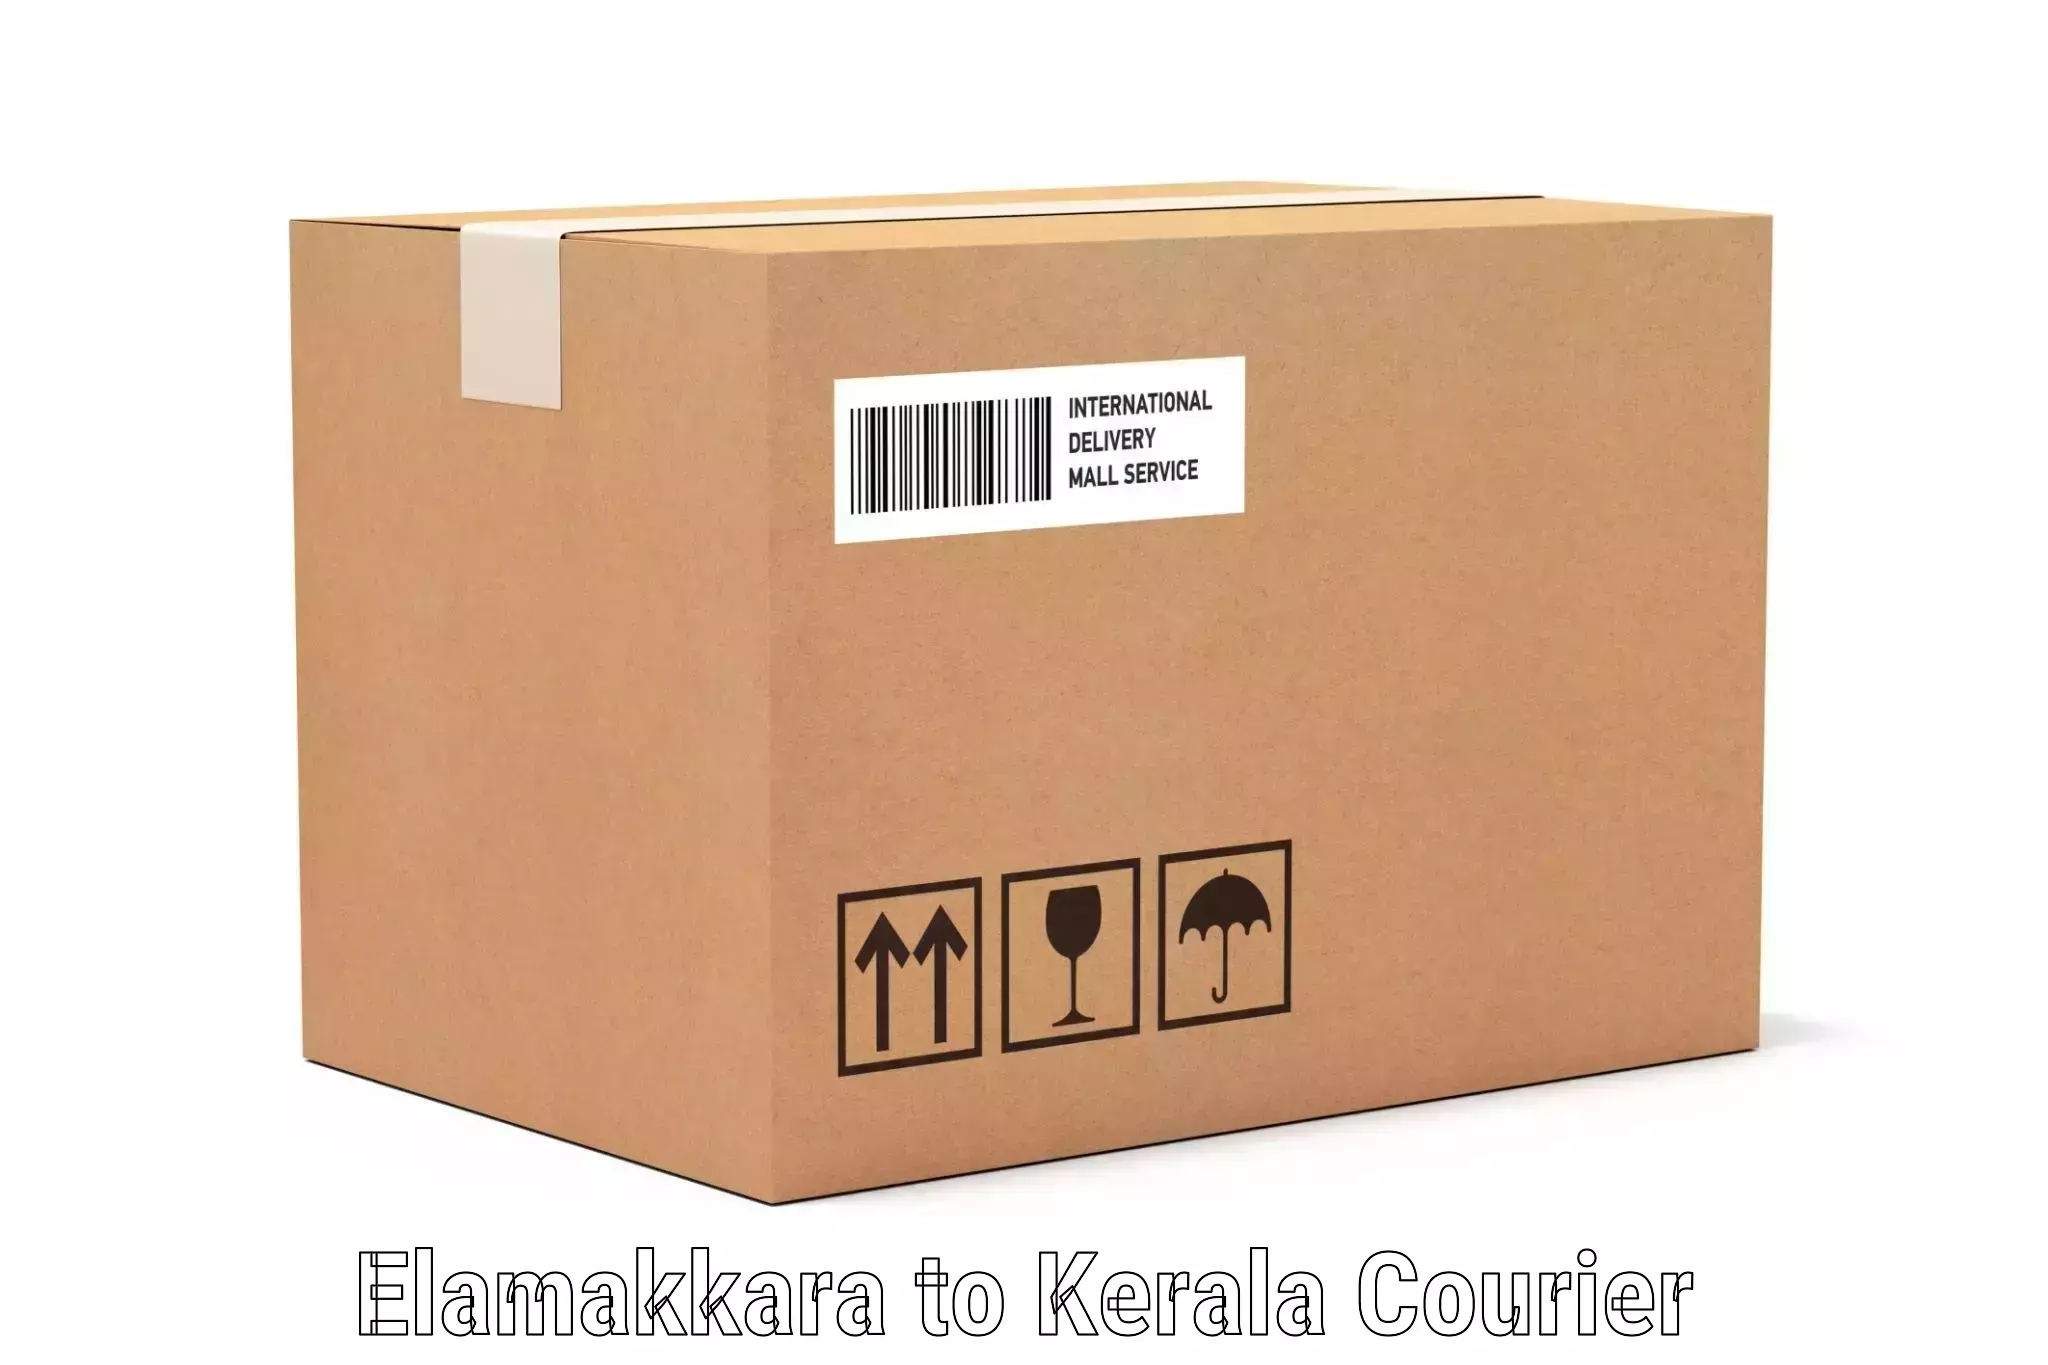 Electronic items luggage shipping Elamakkara to Kerala